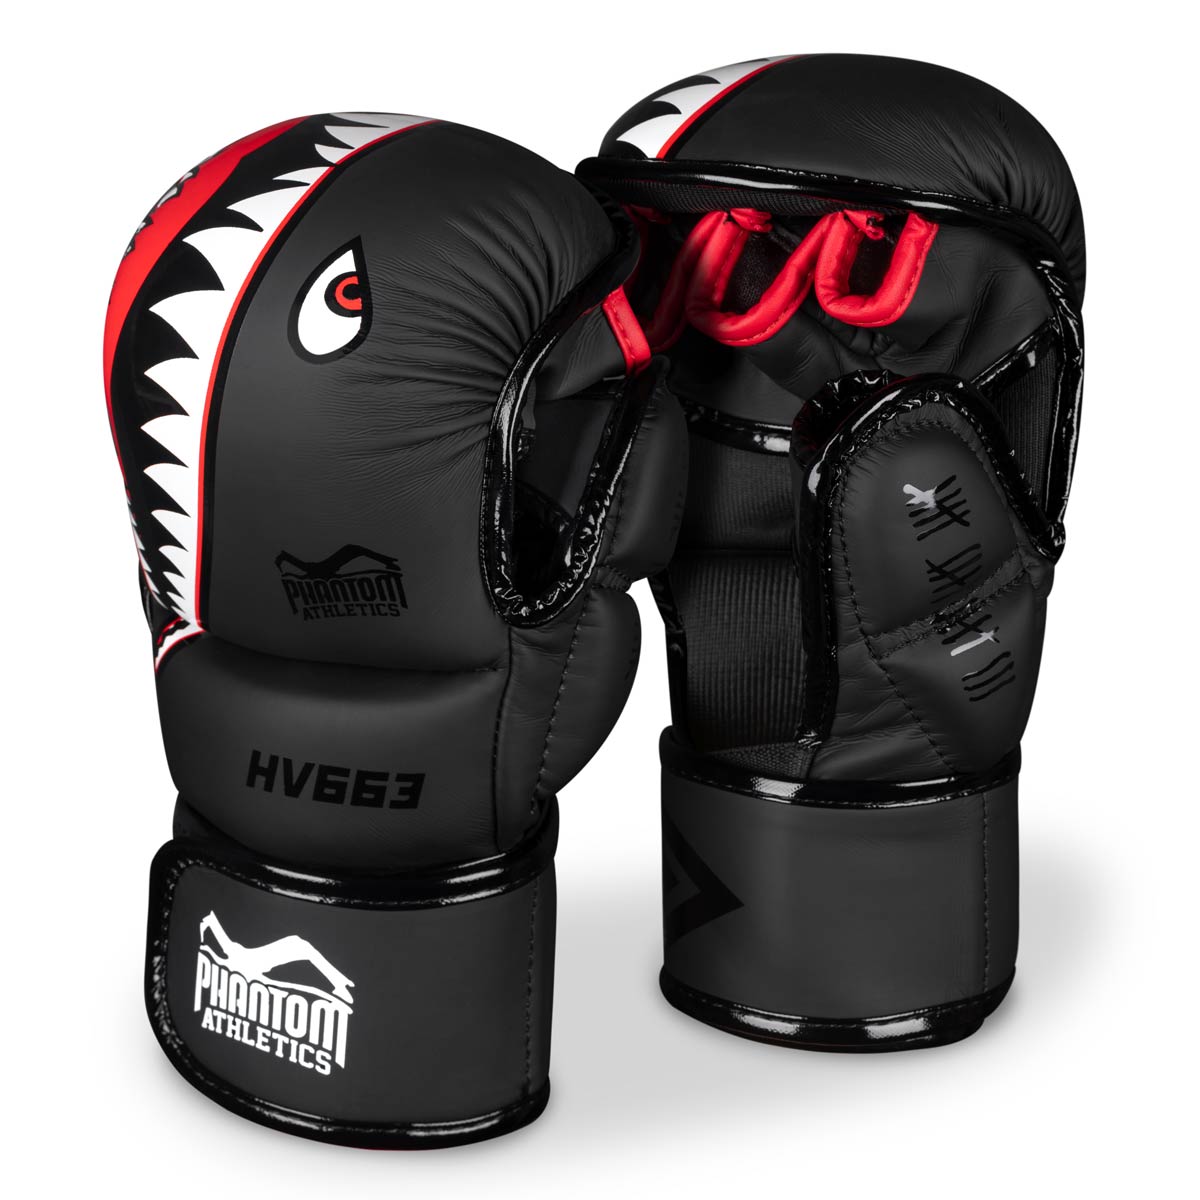 Die Phantom MMA Sparrings Handschuhe im FIGHT SQUAD Design